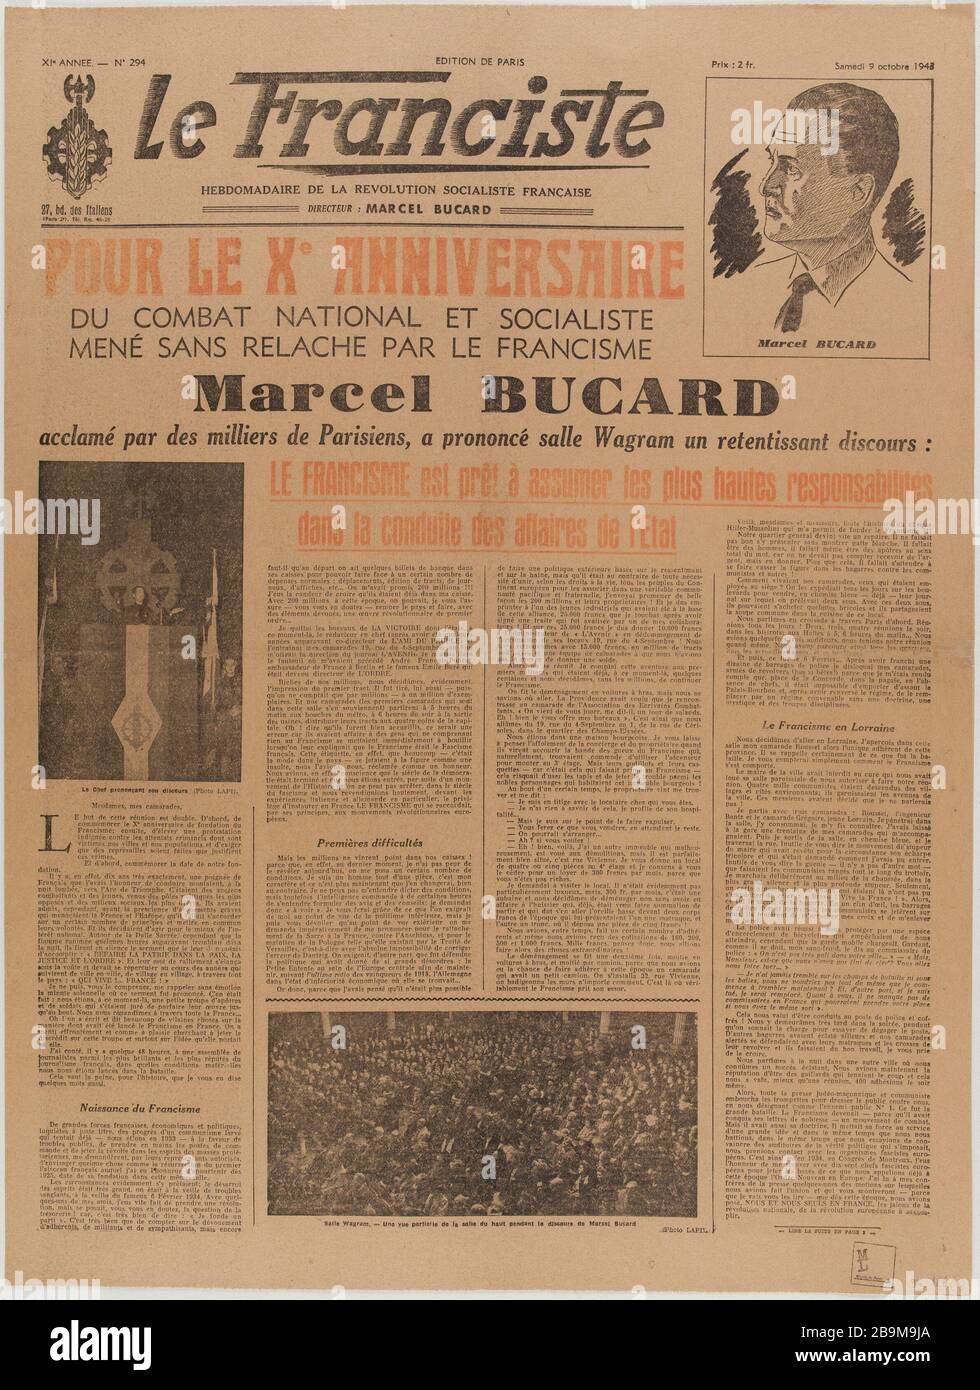 Newspaper 'The Franciste' of October 9, 1943 Journal 'Le Franciste' du 9 octobre 1943. Papier imprimé, 1943. Musée du Général Leclerc de Hauteclocque et de la Libération de Paris, musée Jean Moulin. Stock Photo